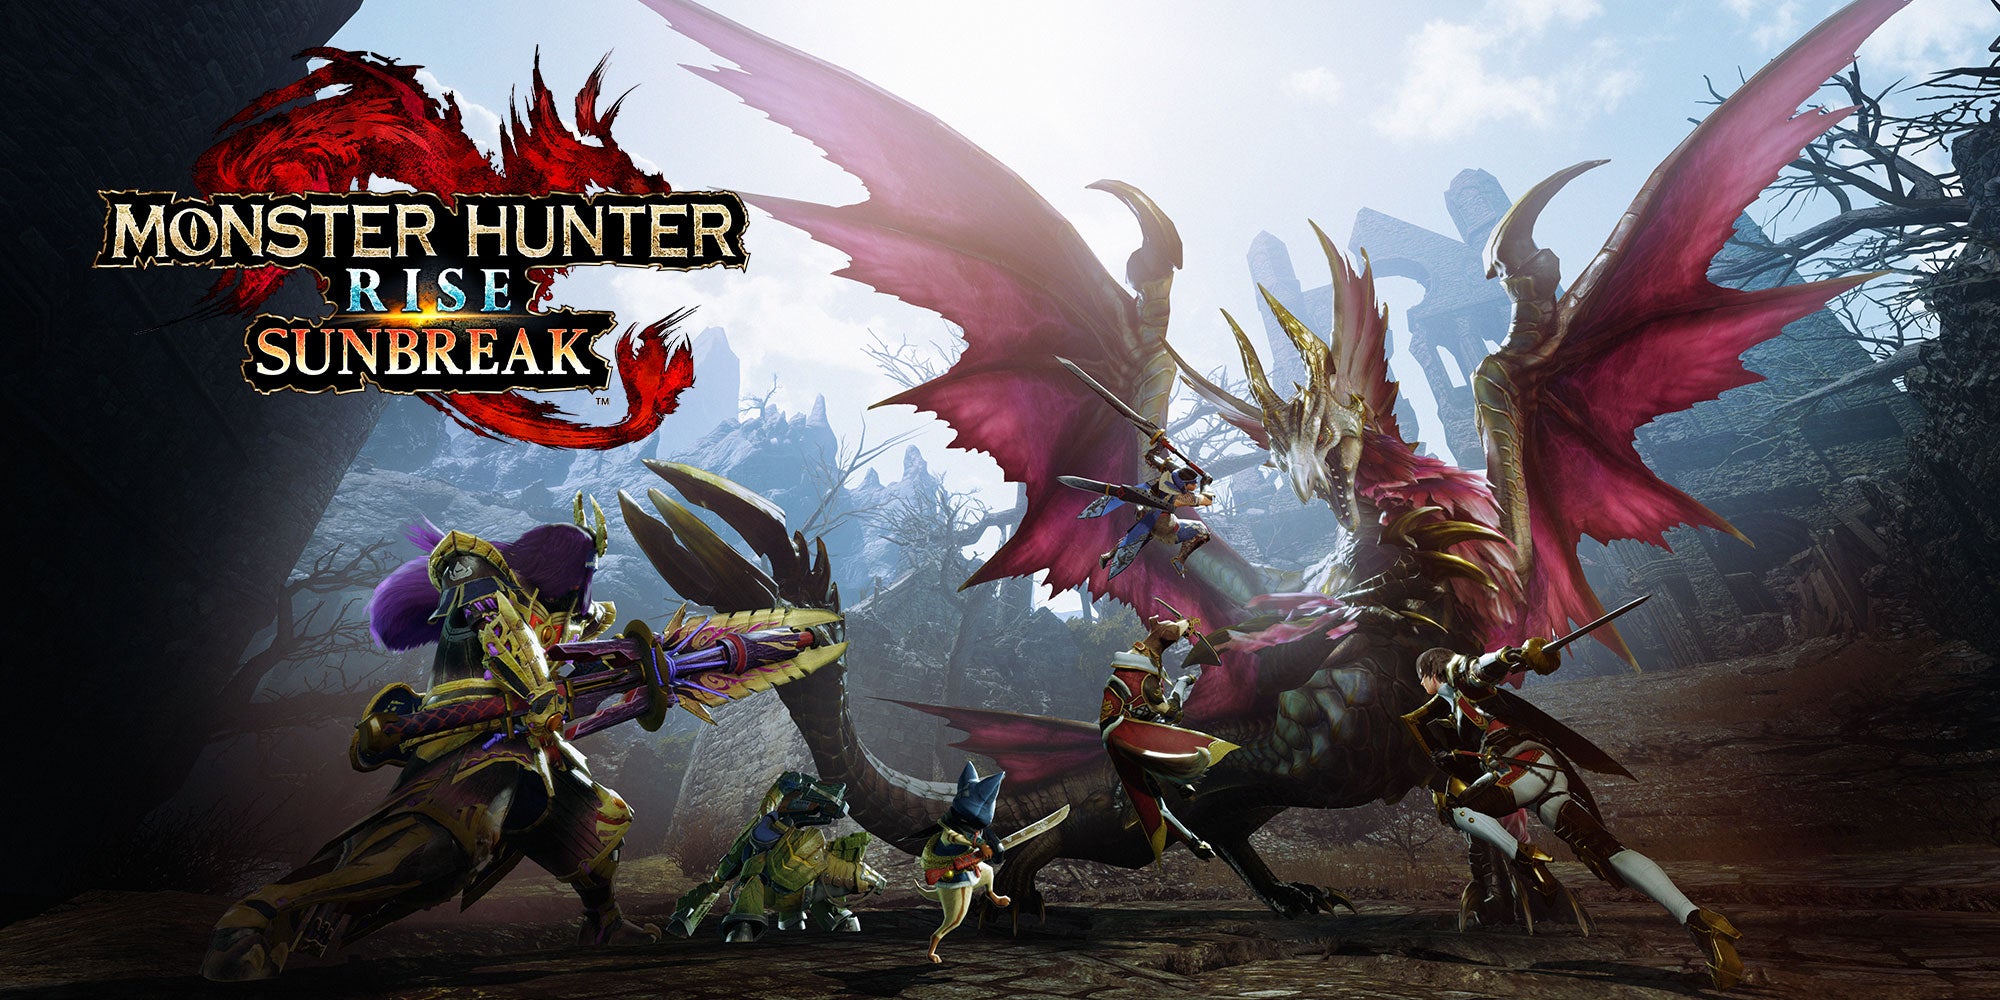 Imagem para Monster Hunter Rise: Sunbreak já vendeu mais 2 milhões de unidades